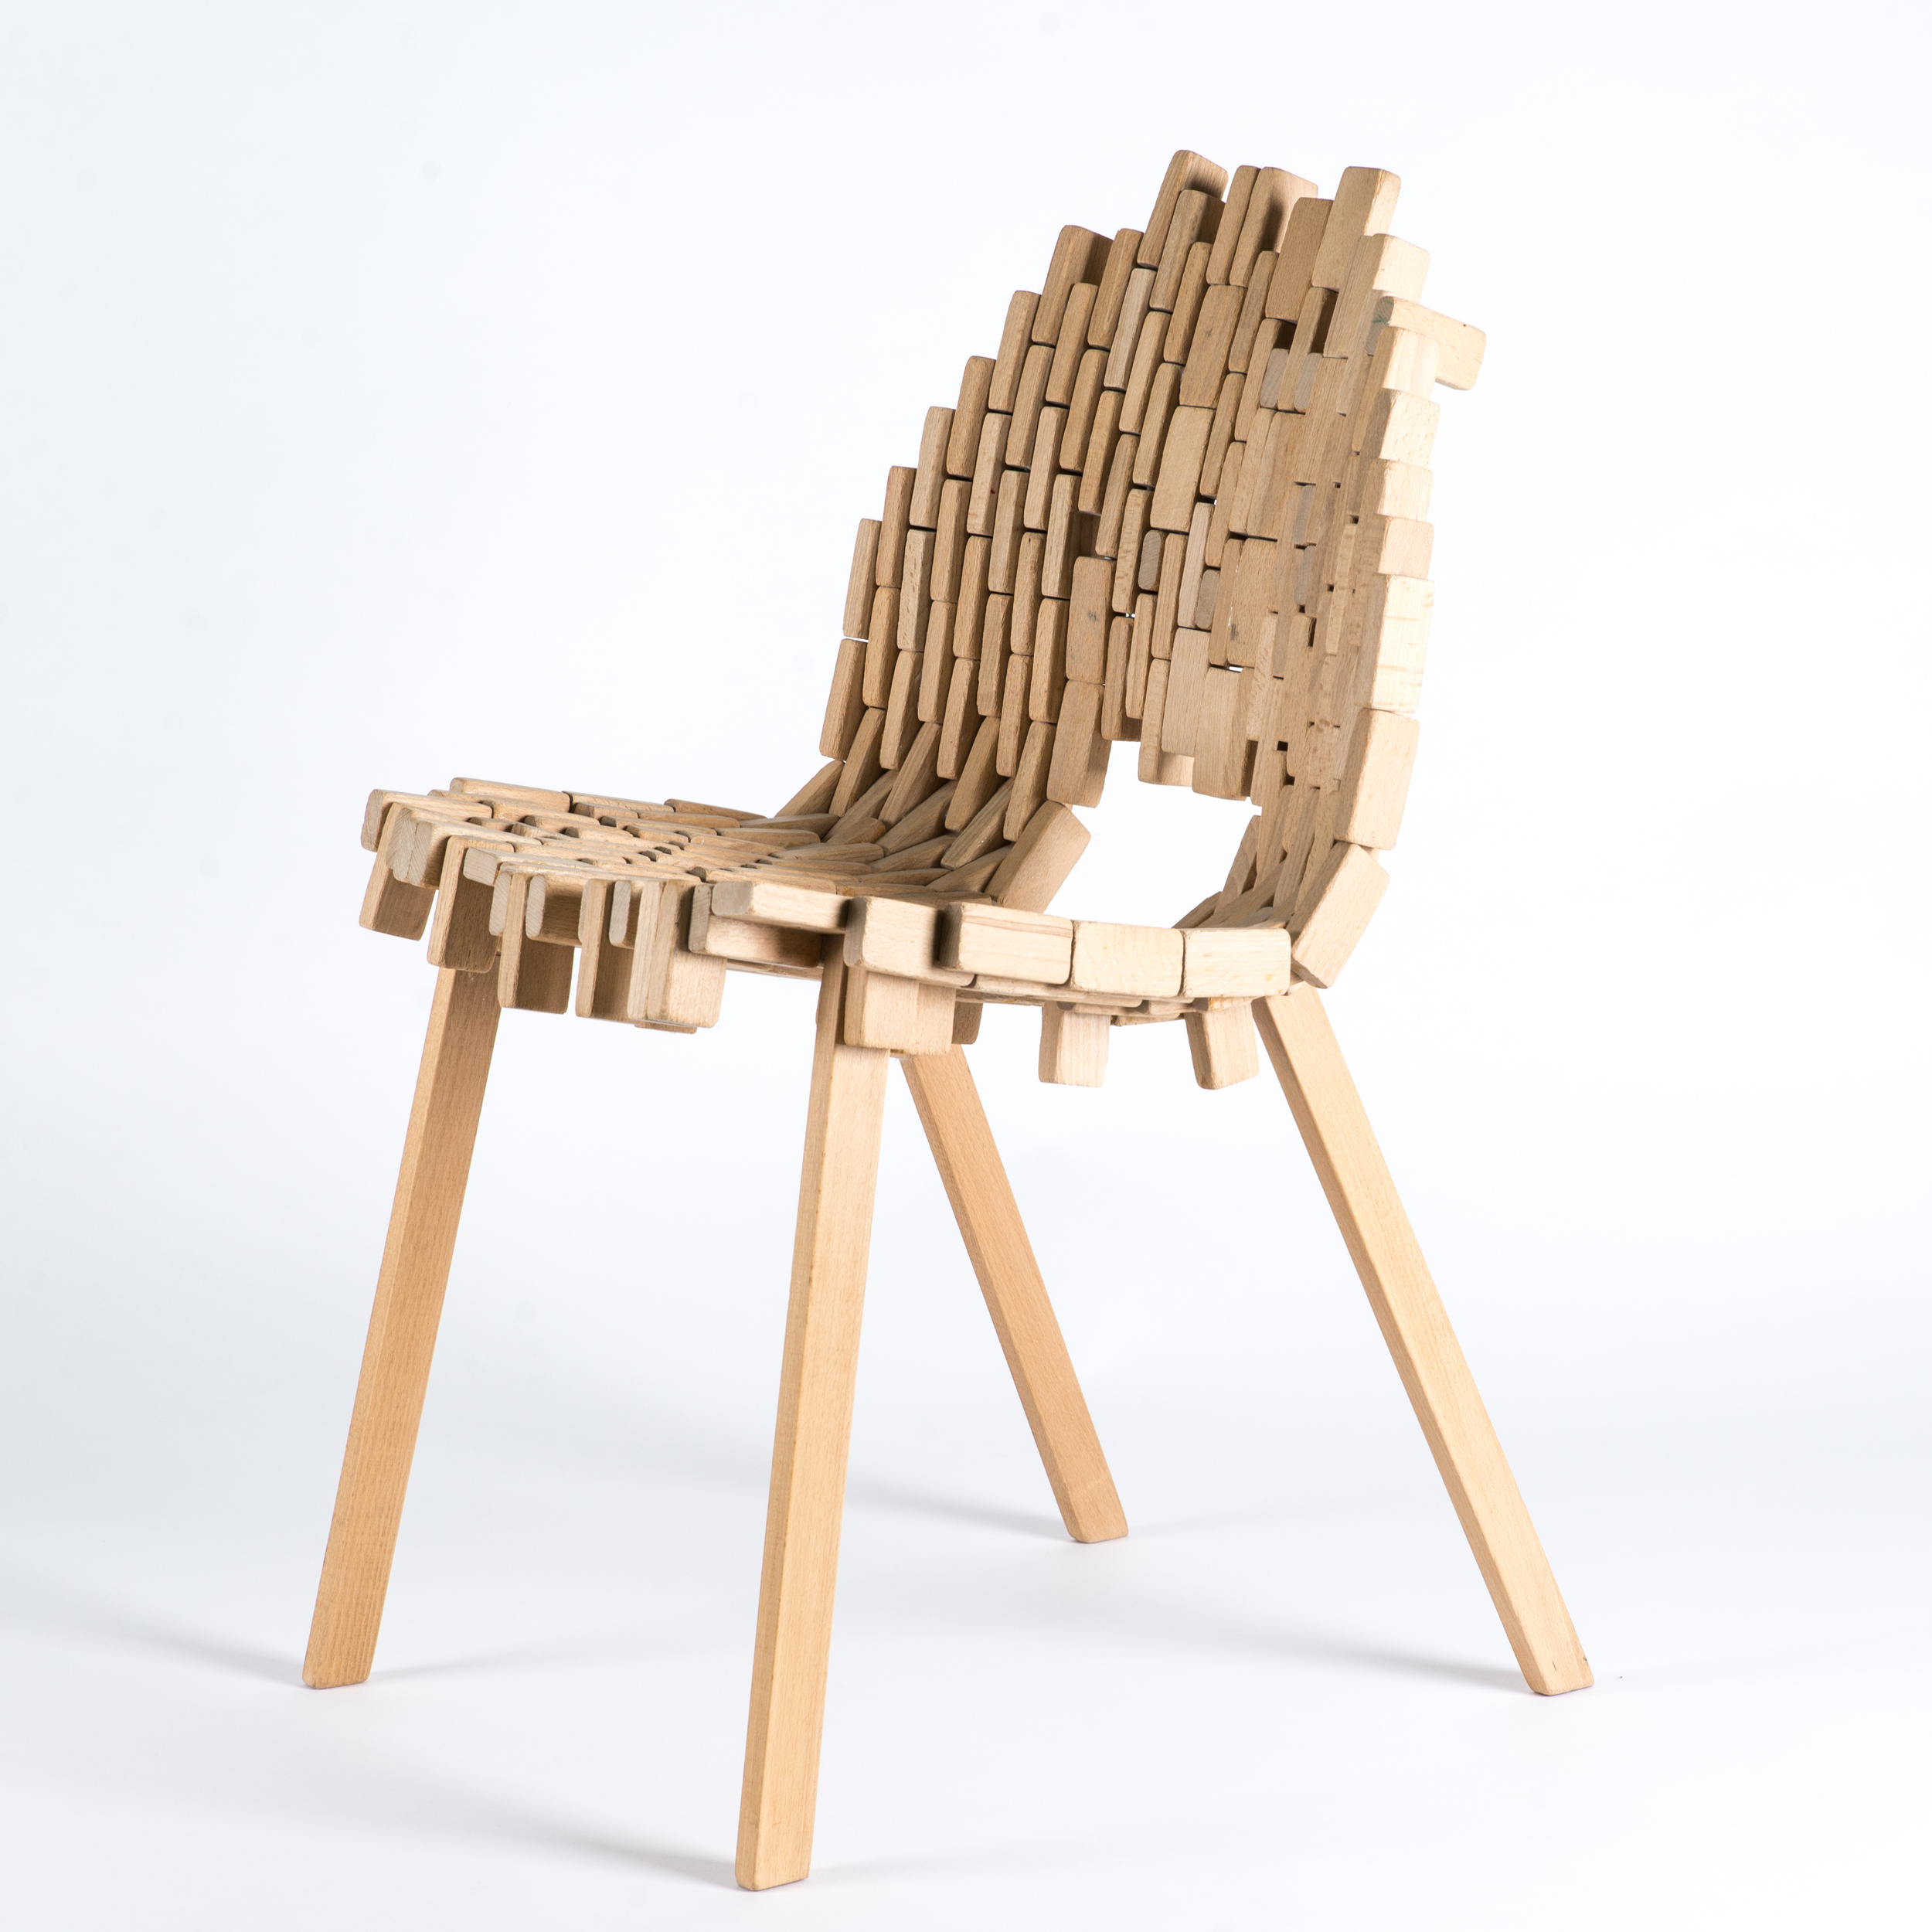 Bricks-chair-02.jpg